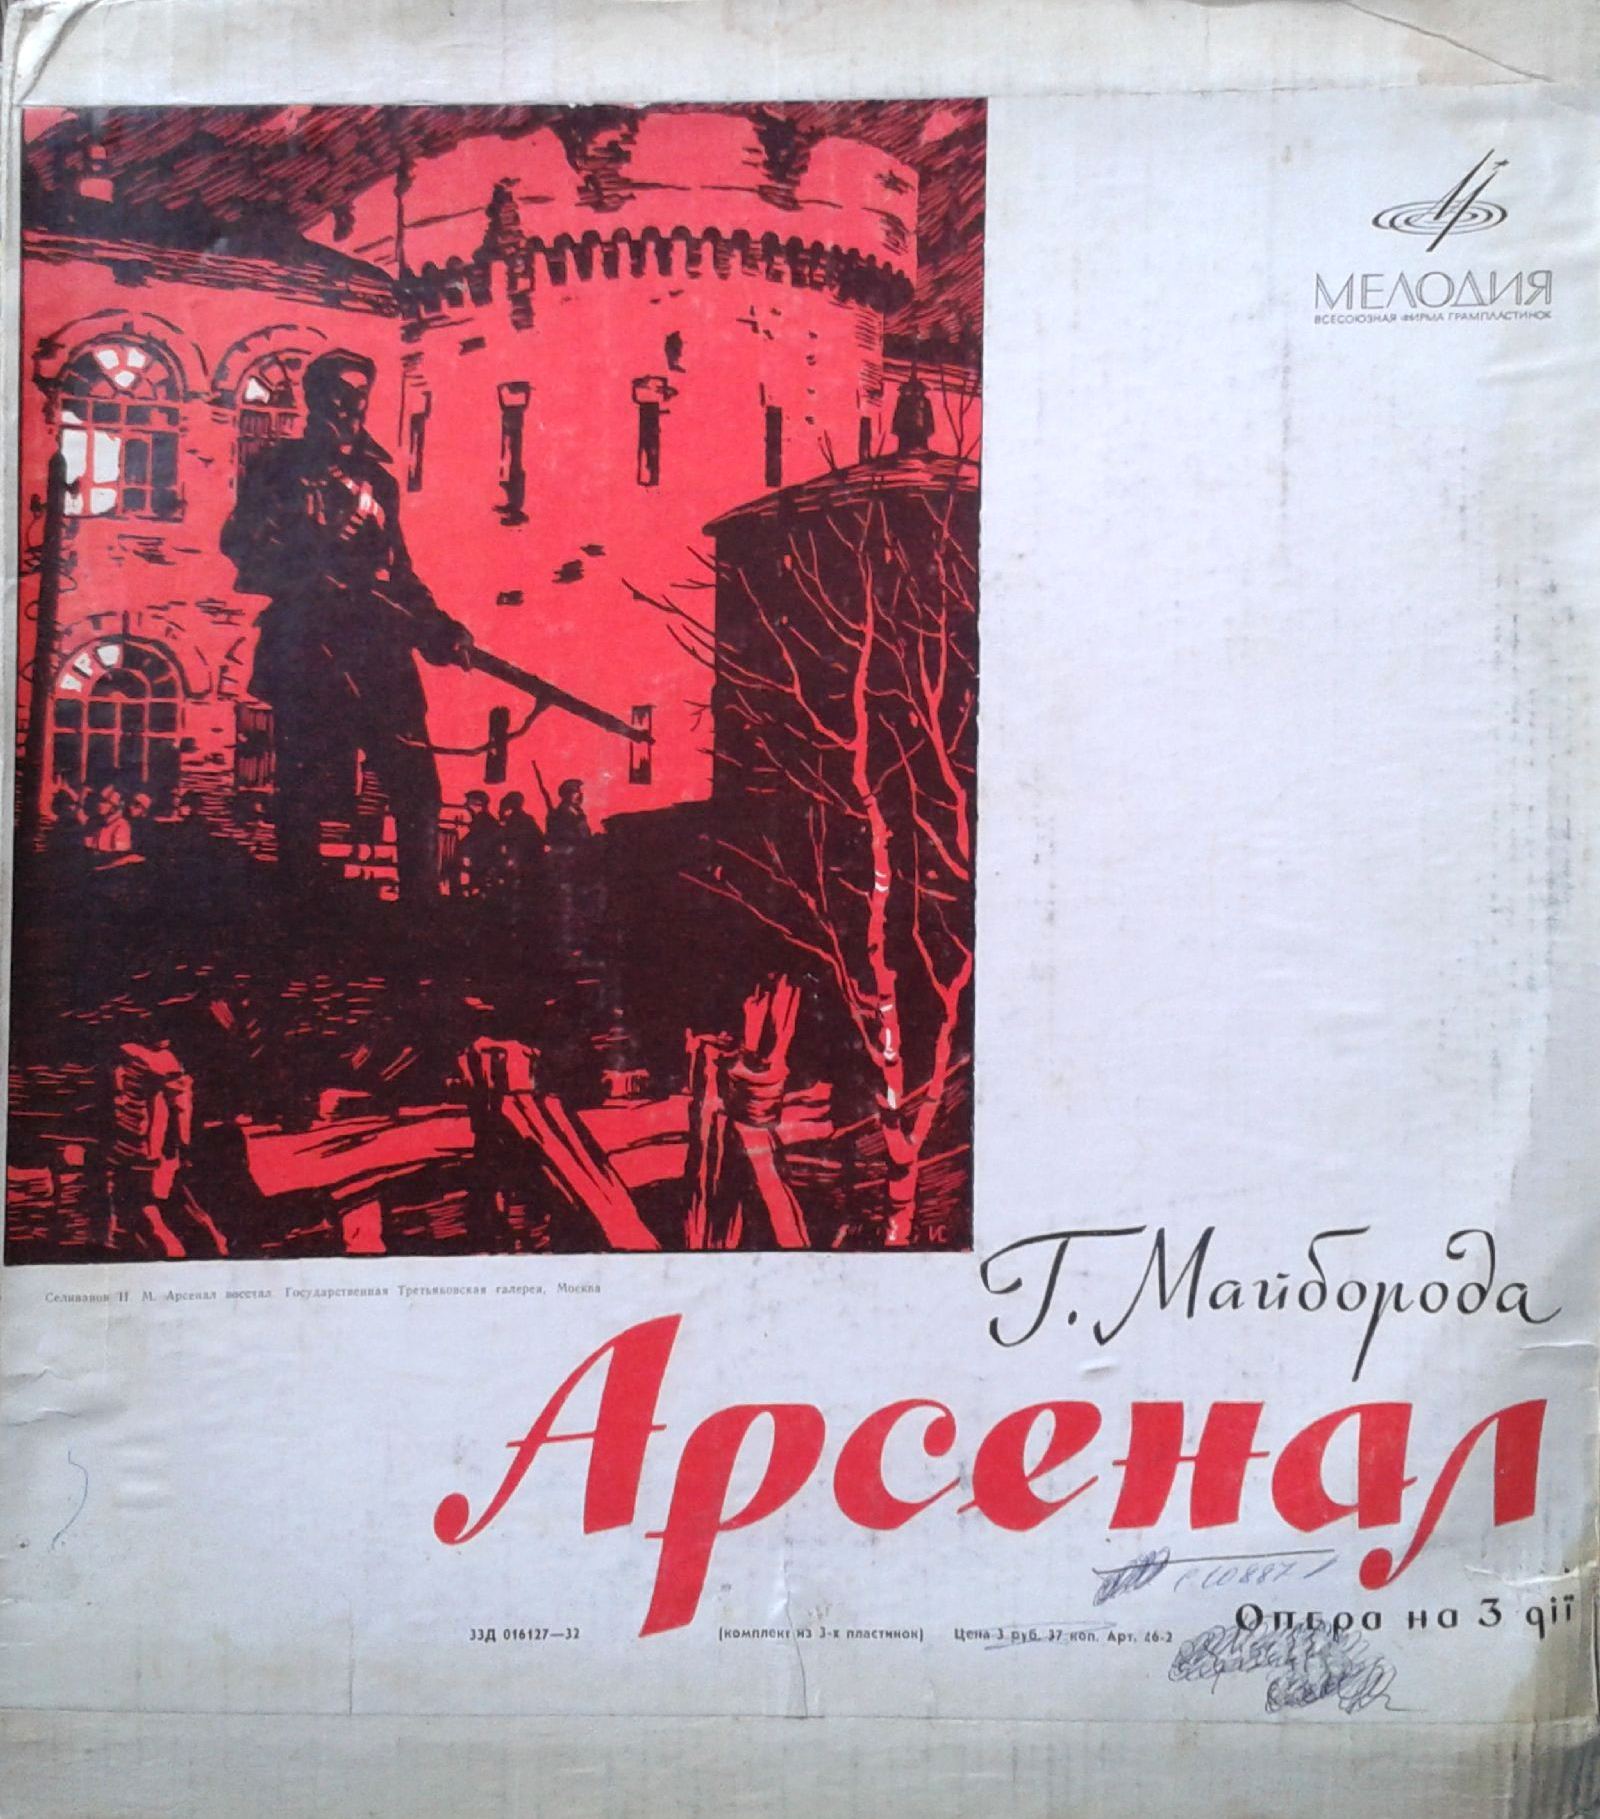 Г. МАЙБОРОДА (1913–1992): Опера «Арсенал» (на украинском языке)